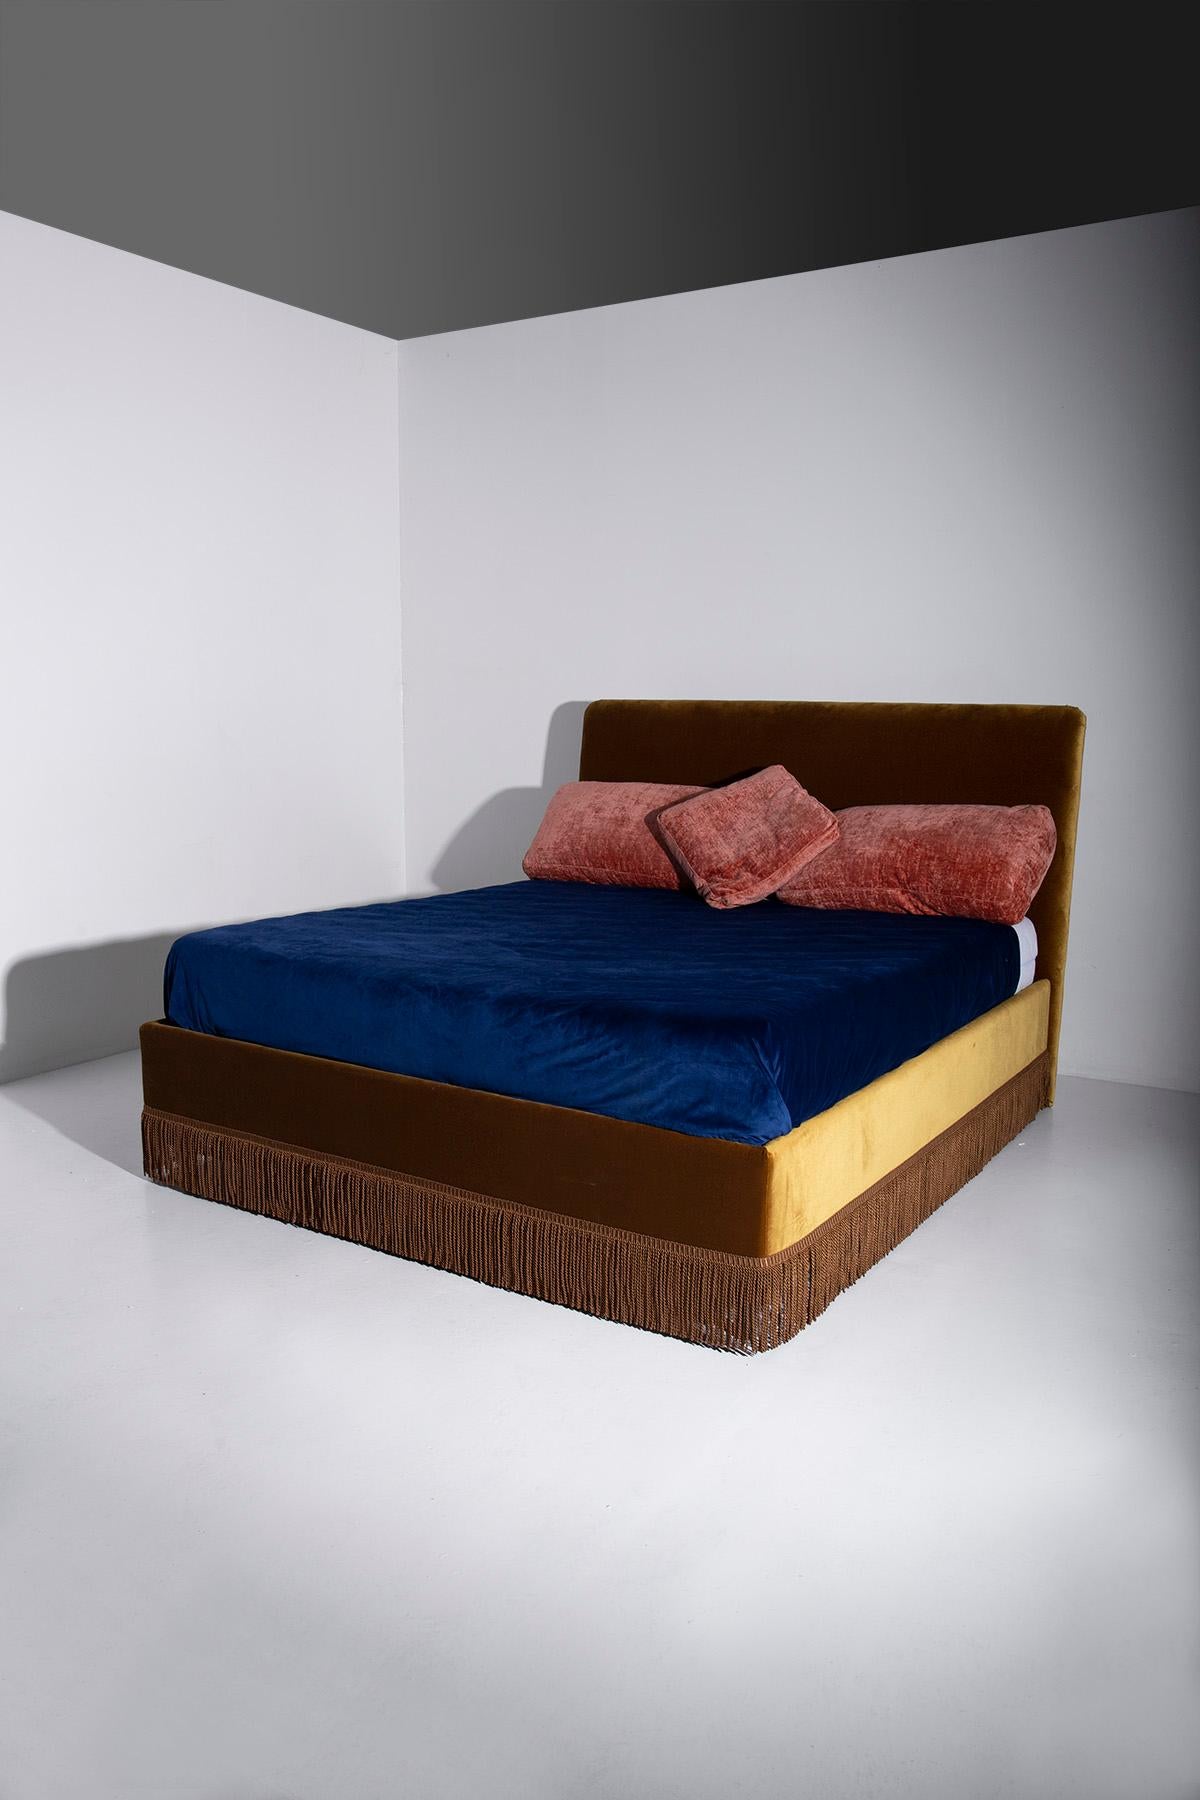 Tauchen Sie ein in die außergewöhnliche Welt unseres majestätischen, modernen italienischen Kingsize-Bettes, ein echtes Kunstwerk aus dem Herzen der italienischen Handwerkskunst. Dieses Bett ist ein sehr begehrtes Stück und kann von erfahrenen